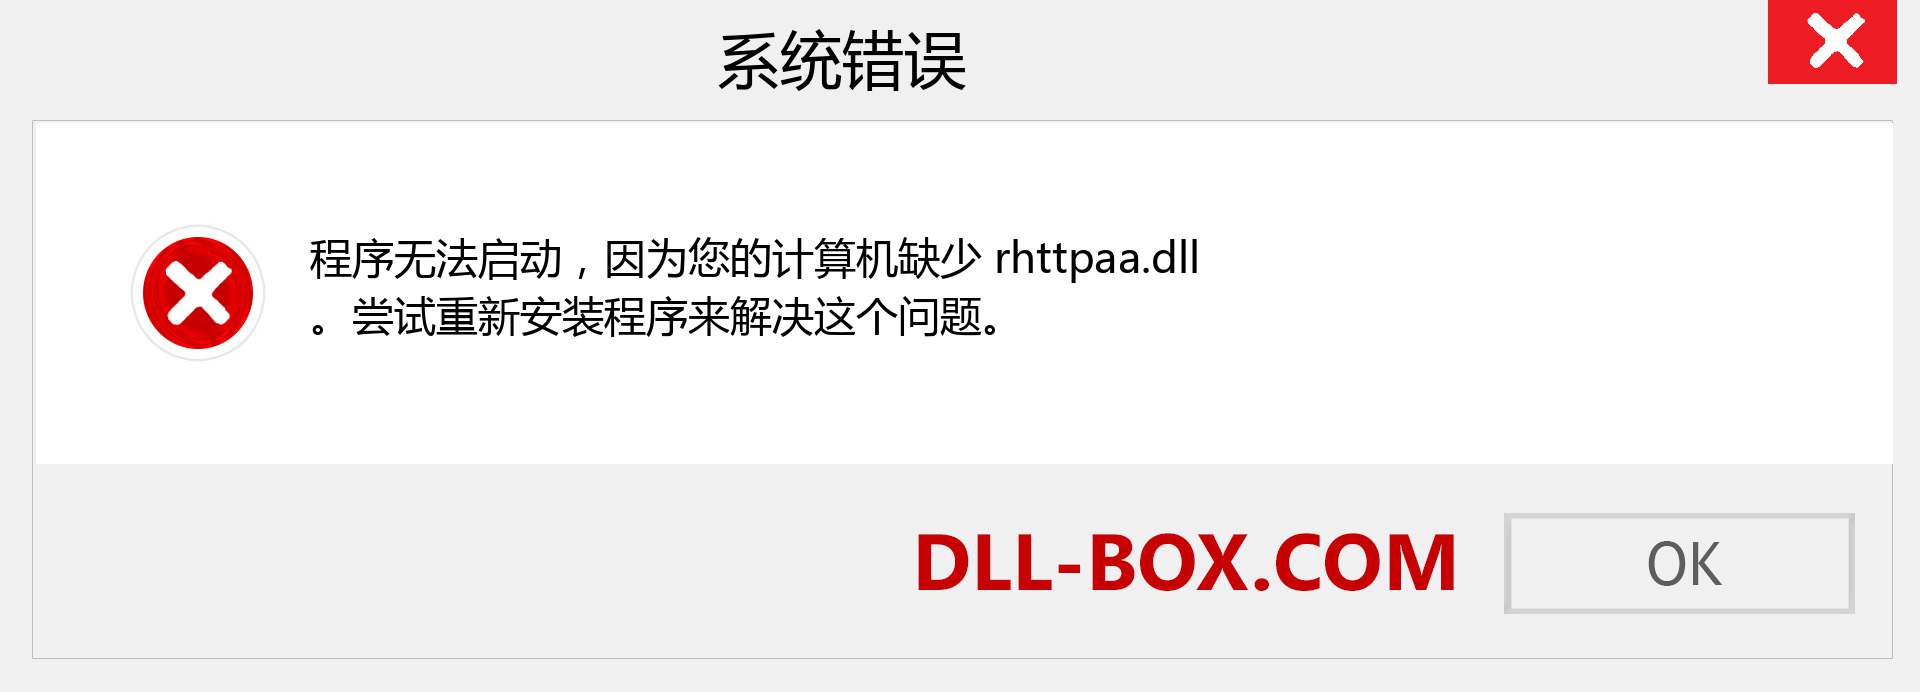 rhttpaa.dll 文件丢失？。 适用于 Windows 7、8、10 的下载 - 修复 Windows、照片、图像上的 rhttpaa dll 丢失错误